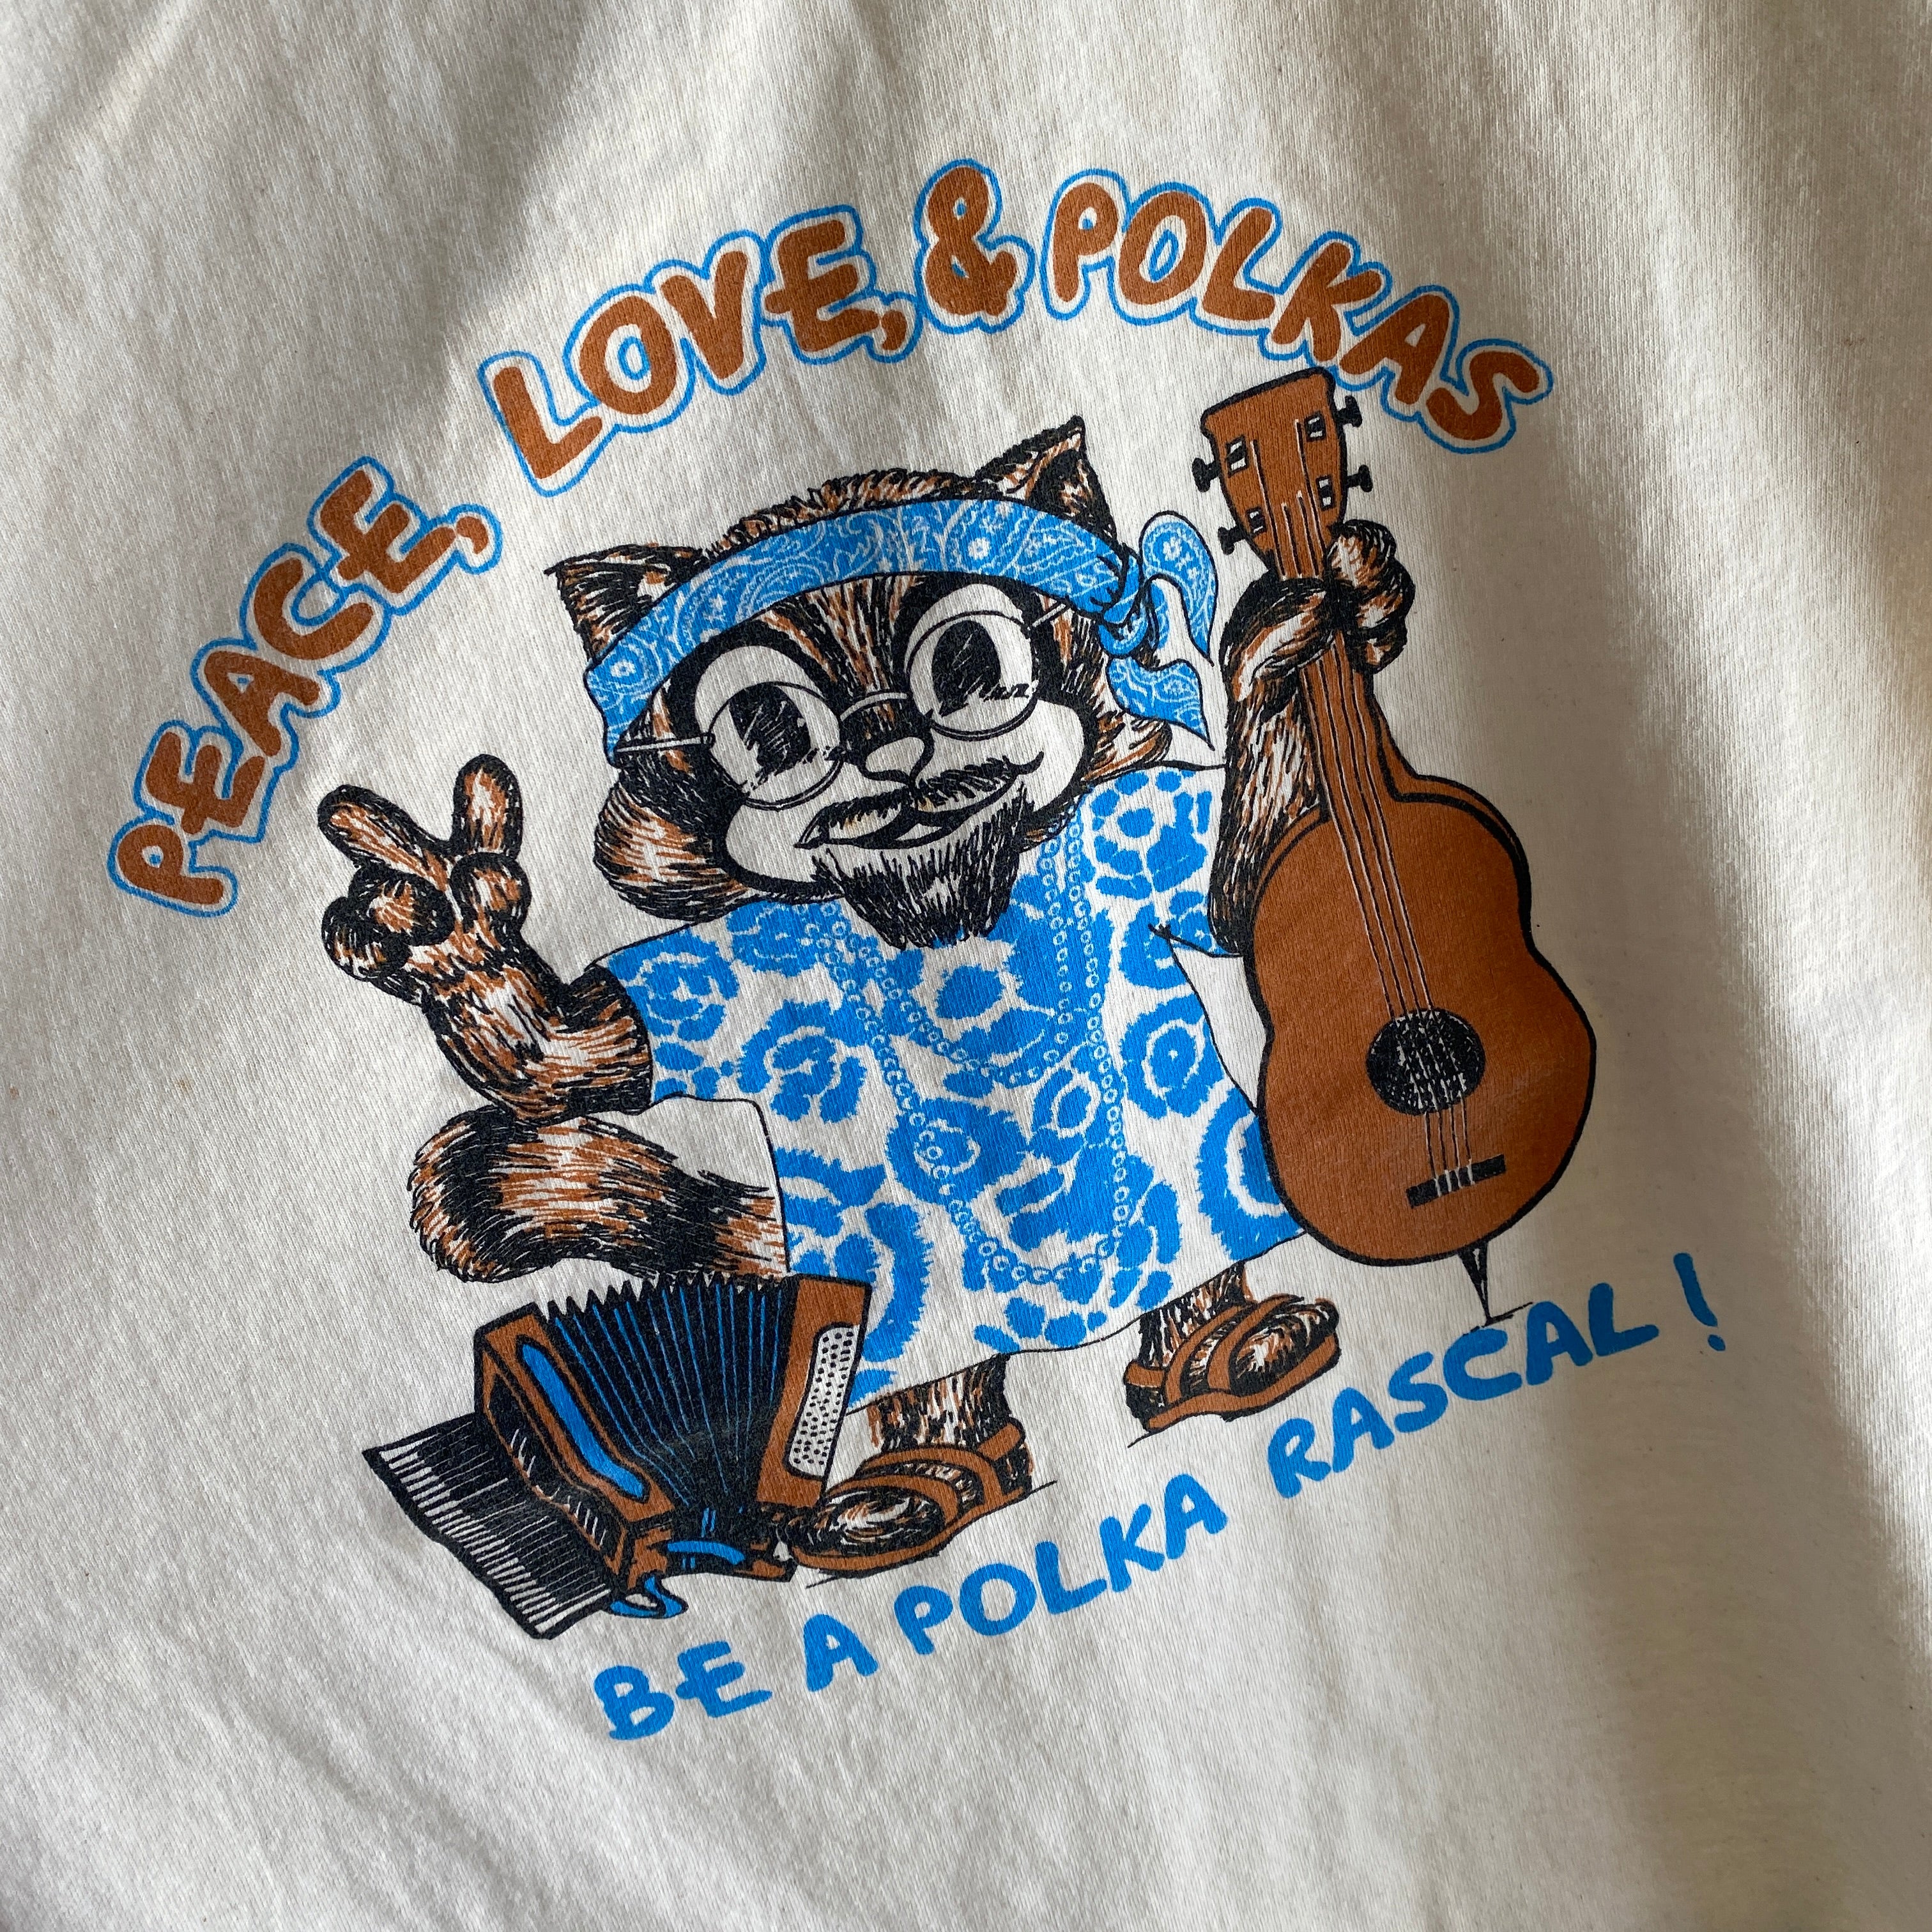 1980s PEACE, LOVE, POLKA - Be a Polka Rascal T-Shirt by Anvil - WOWZA!